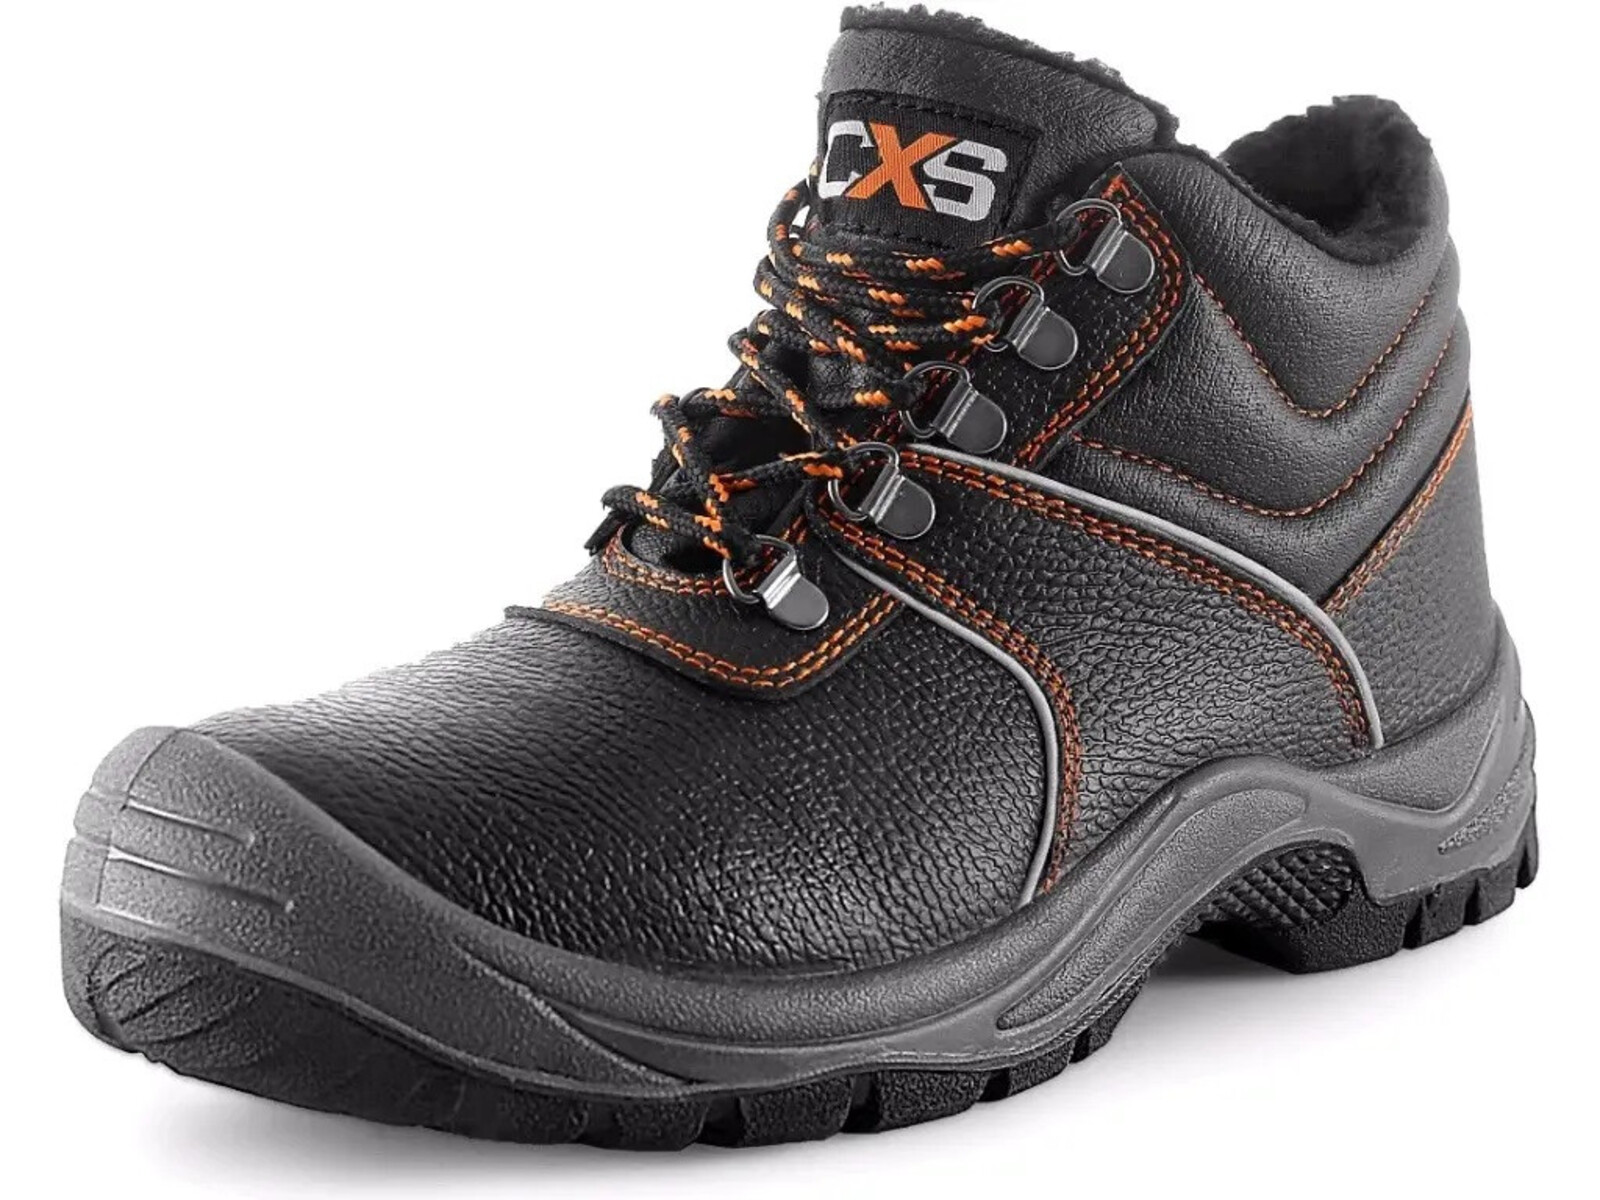 Zimná pracovná členková obuv CXS Stone Apatit Winter O2 FO SRC - veľkosť: 37, farba: čierna/oranžová